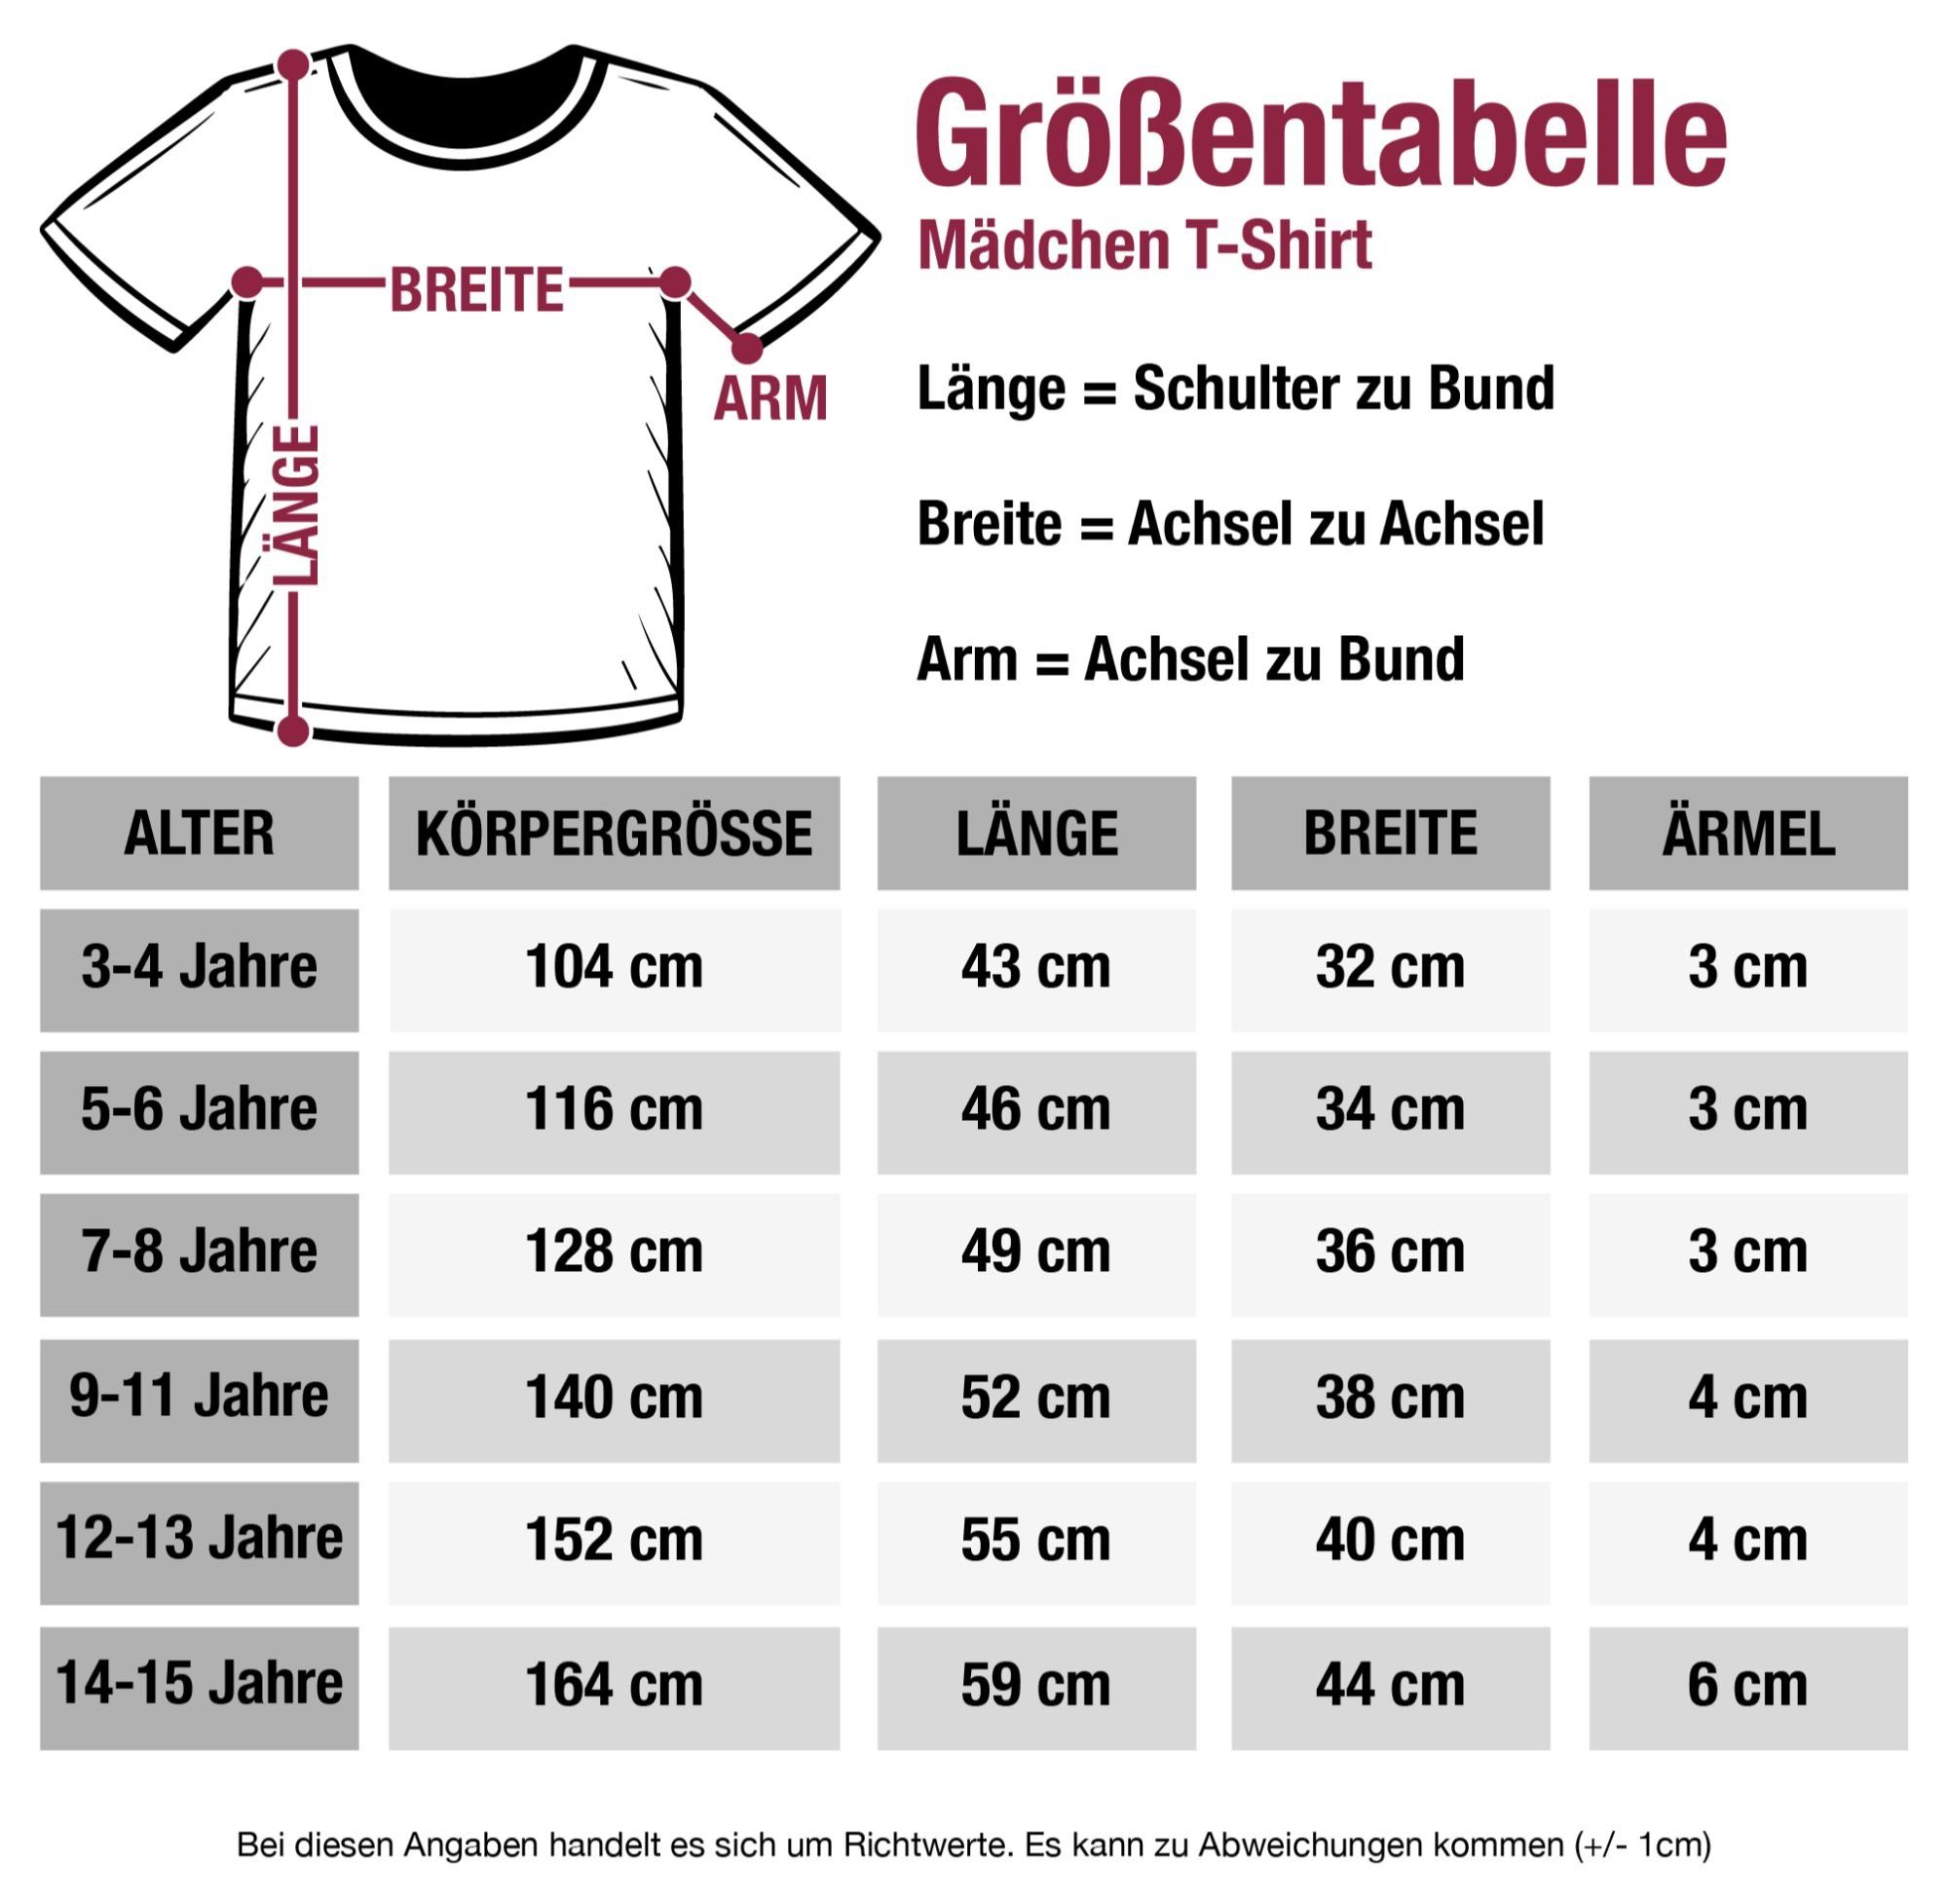 Kindergarten T-Shirt jetzt Fuchsia Hallo Glitzer Kindergarten im Einhorn 1 Shirtracer -